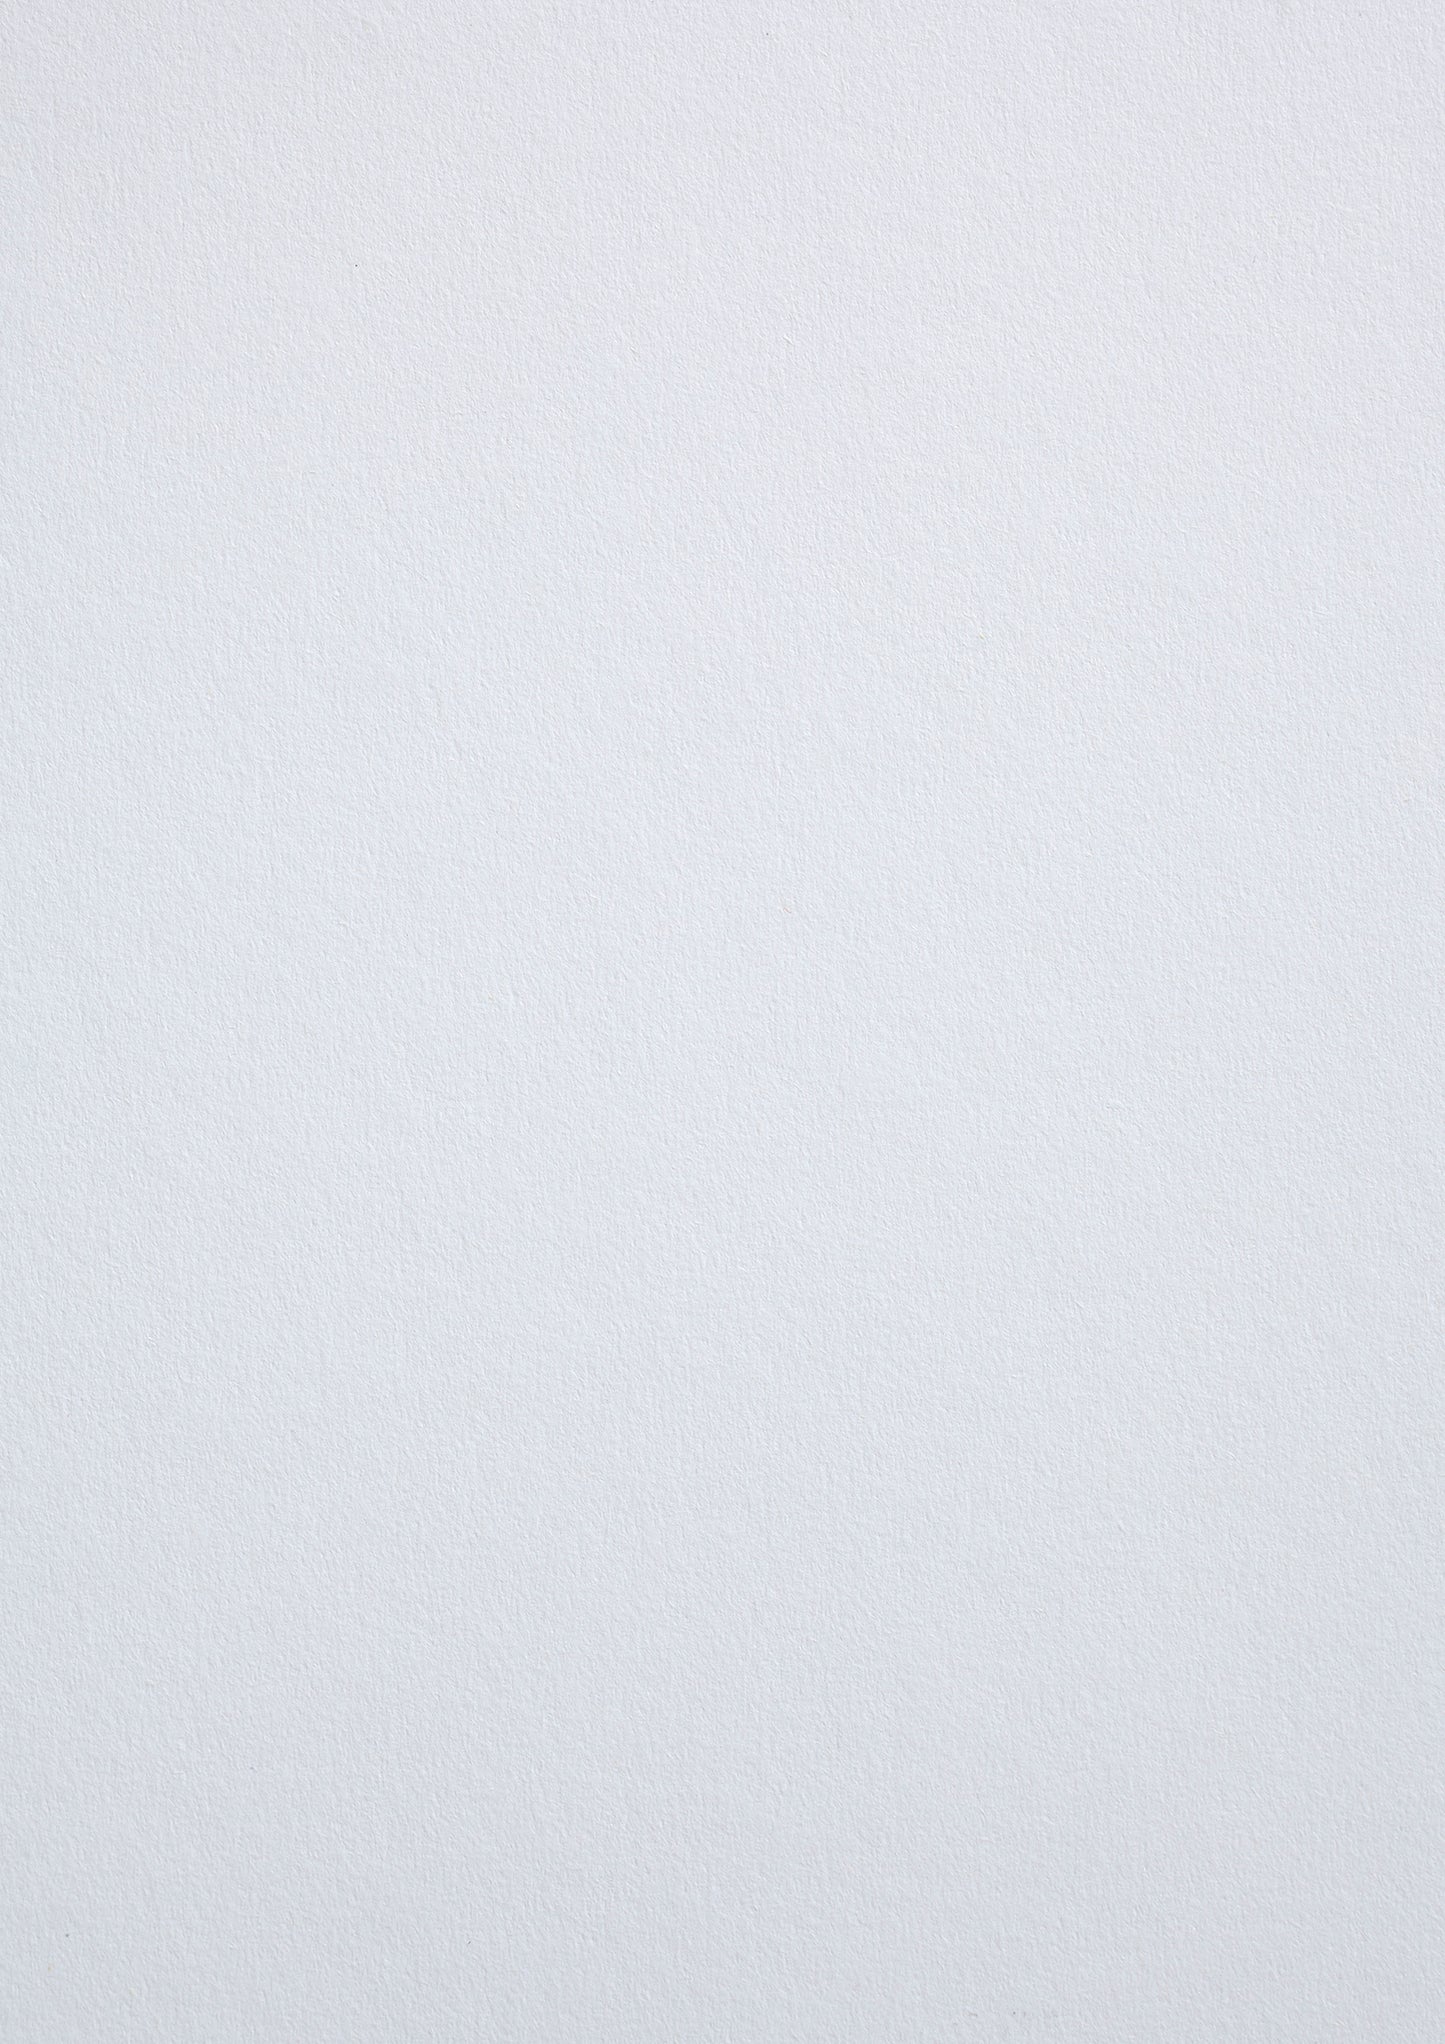 Tört fehér, pamut művészpapír - Gesso - 360 g/m2 - A4